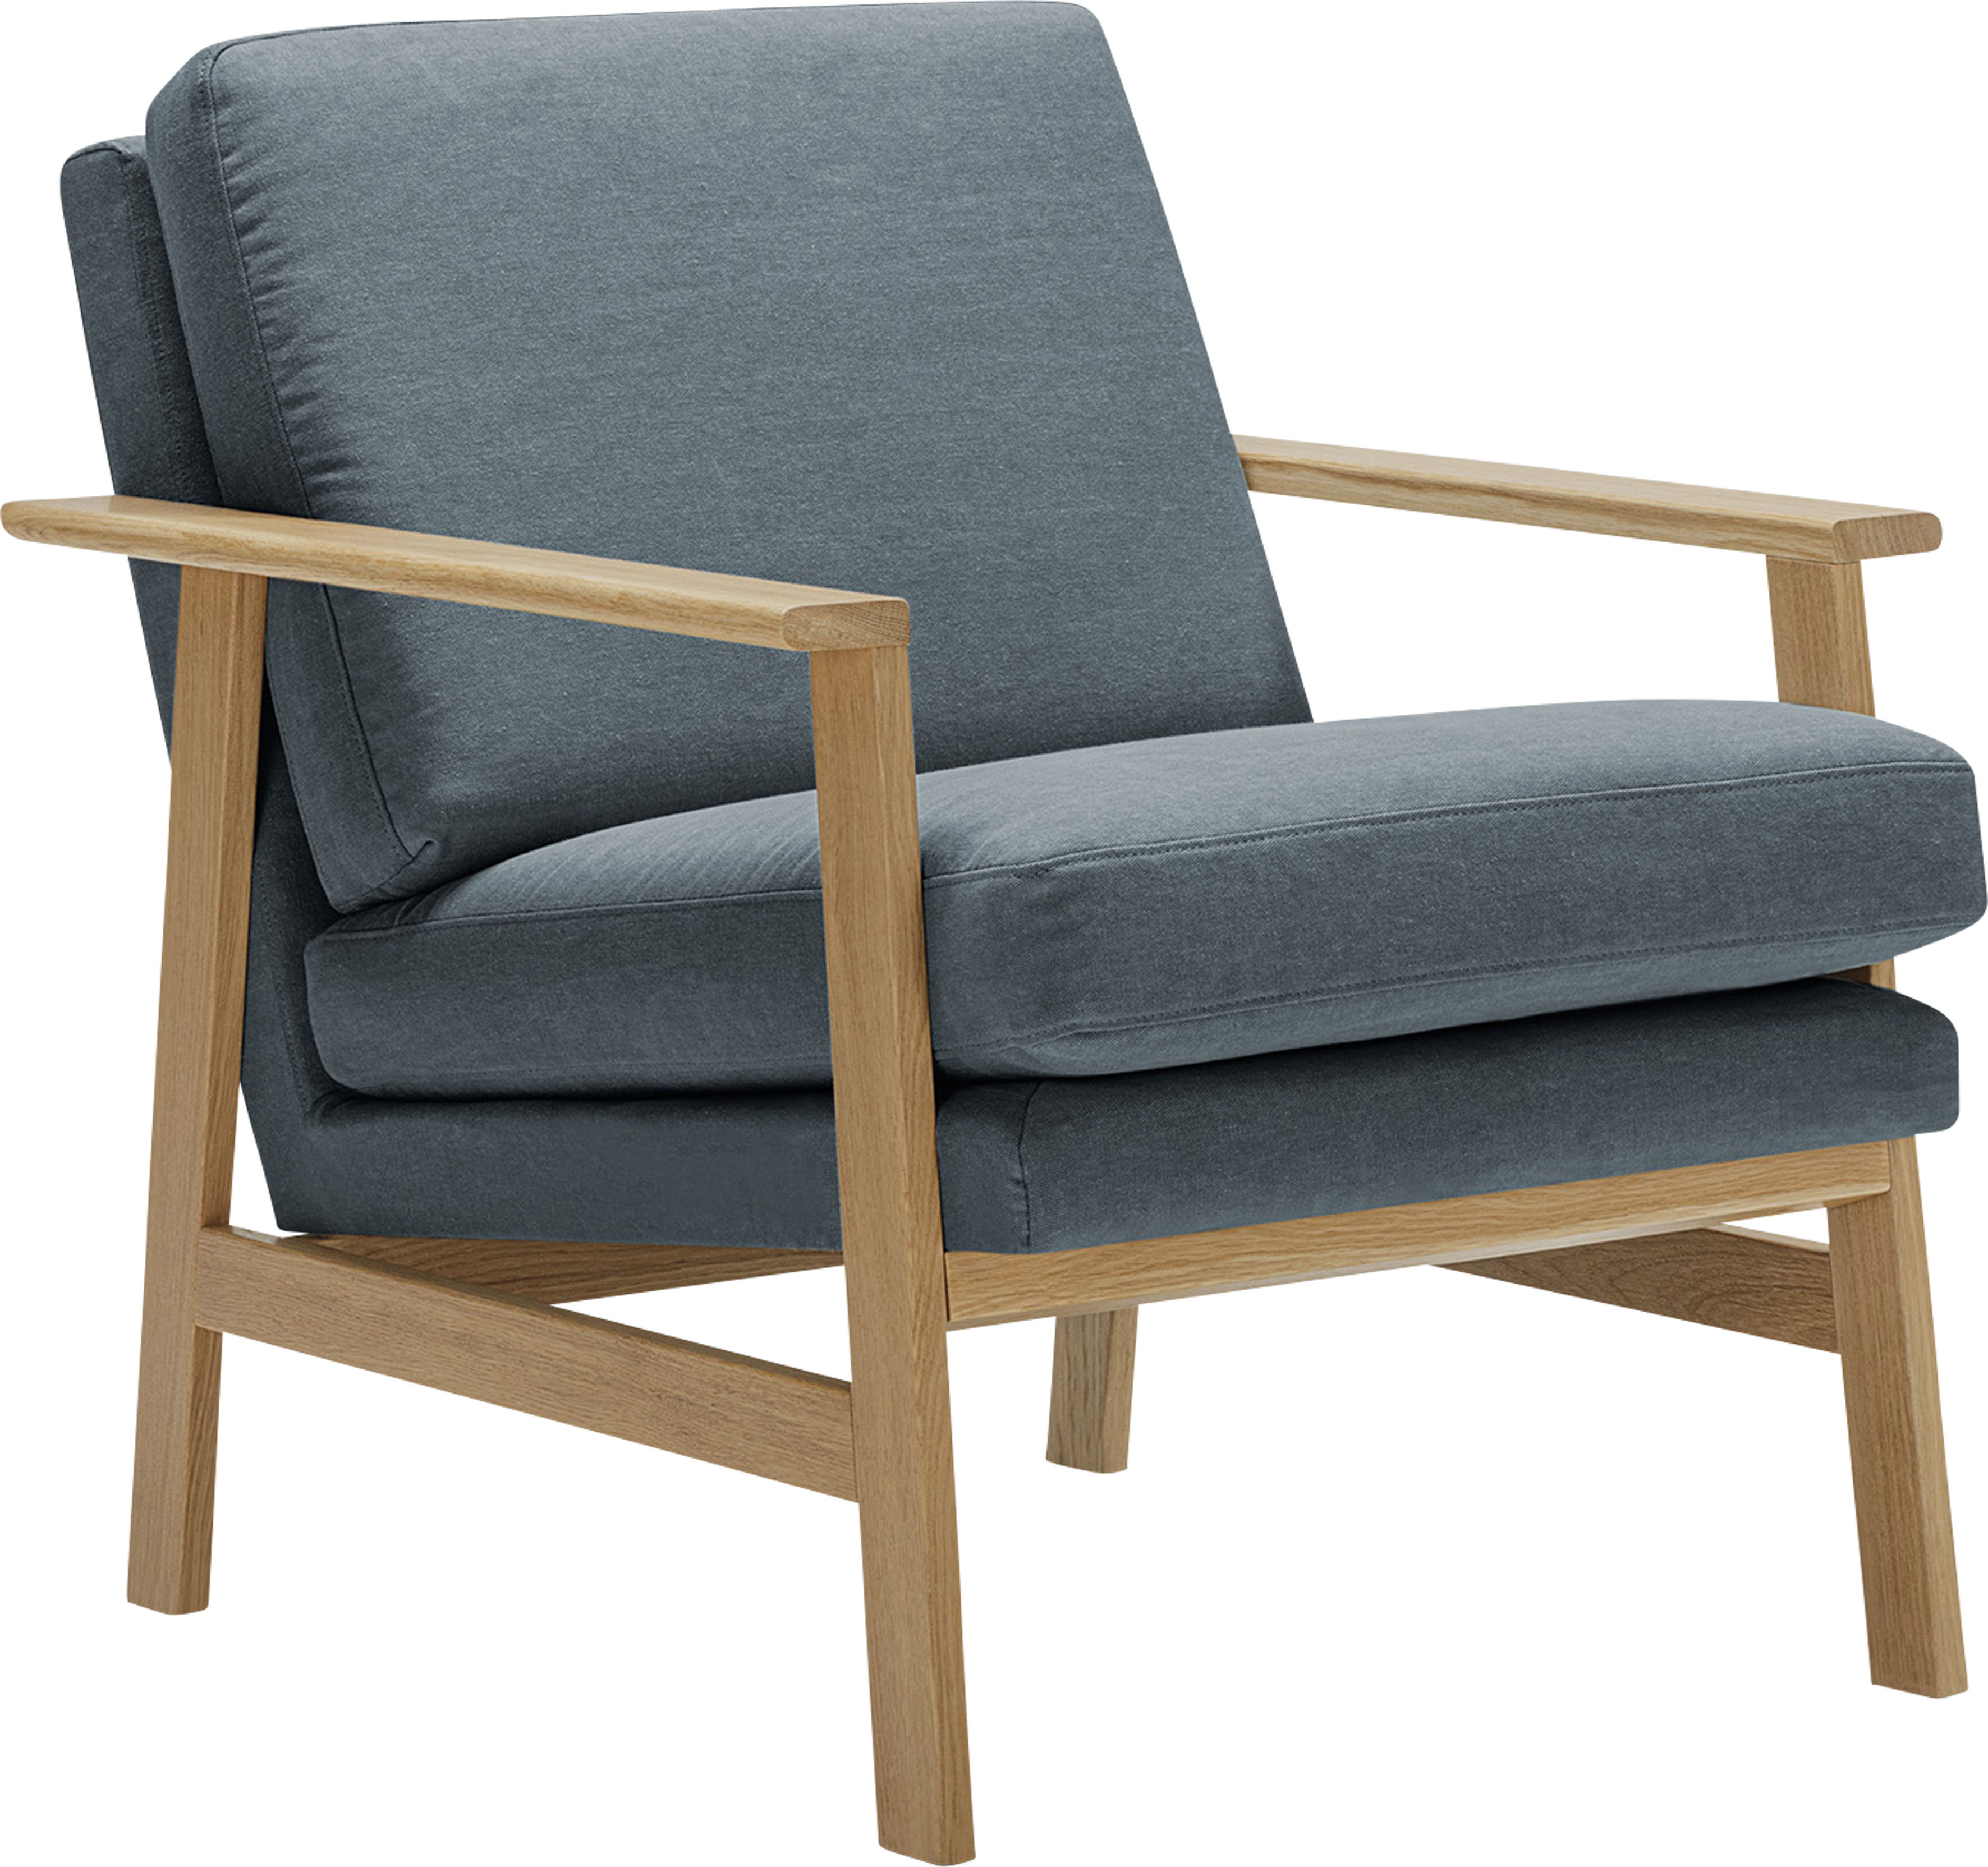 LOVI Sessel Pepper, mit hochwertigem massivem Eichengestell, neuer Klassiker mit zeitlosem Design